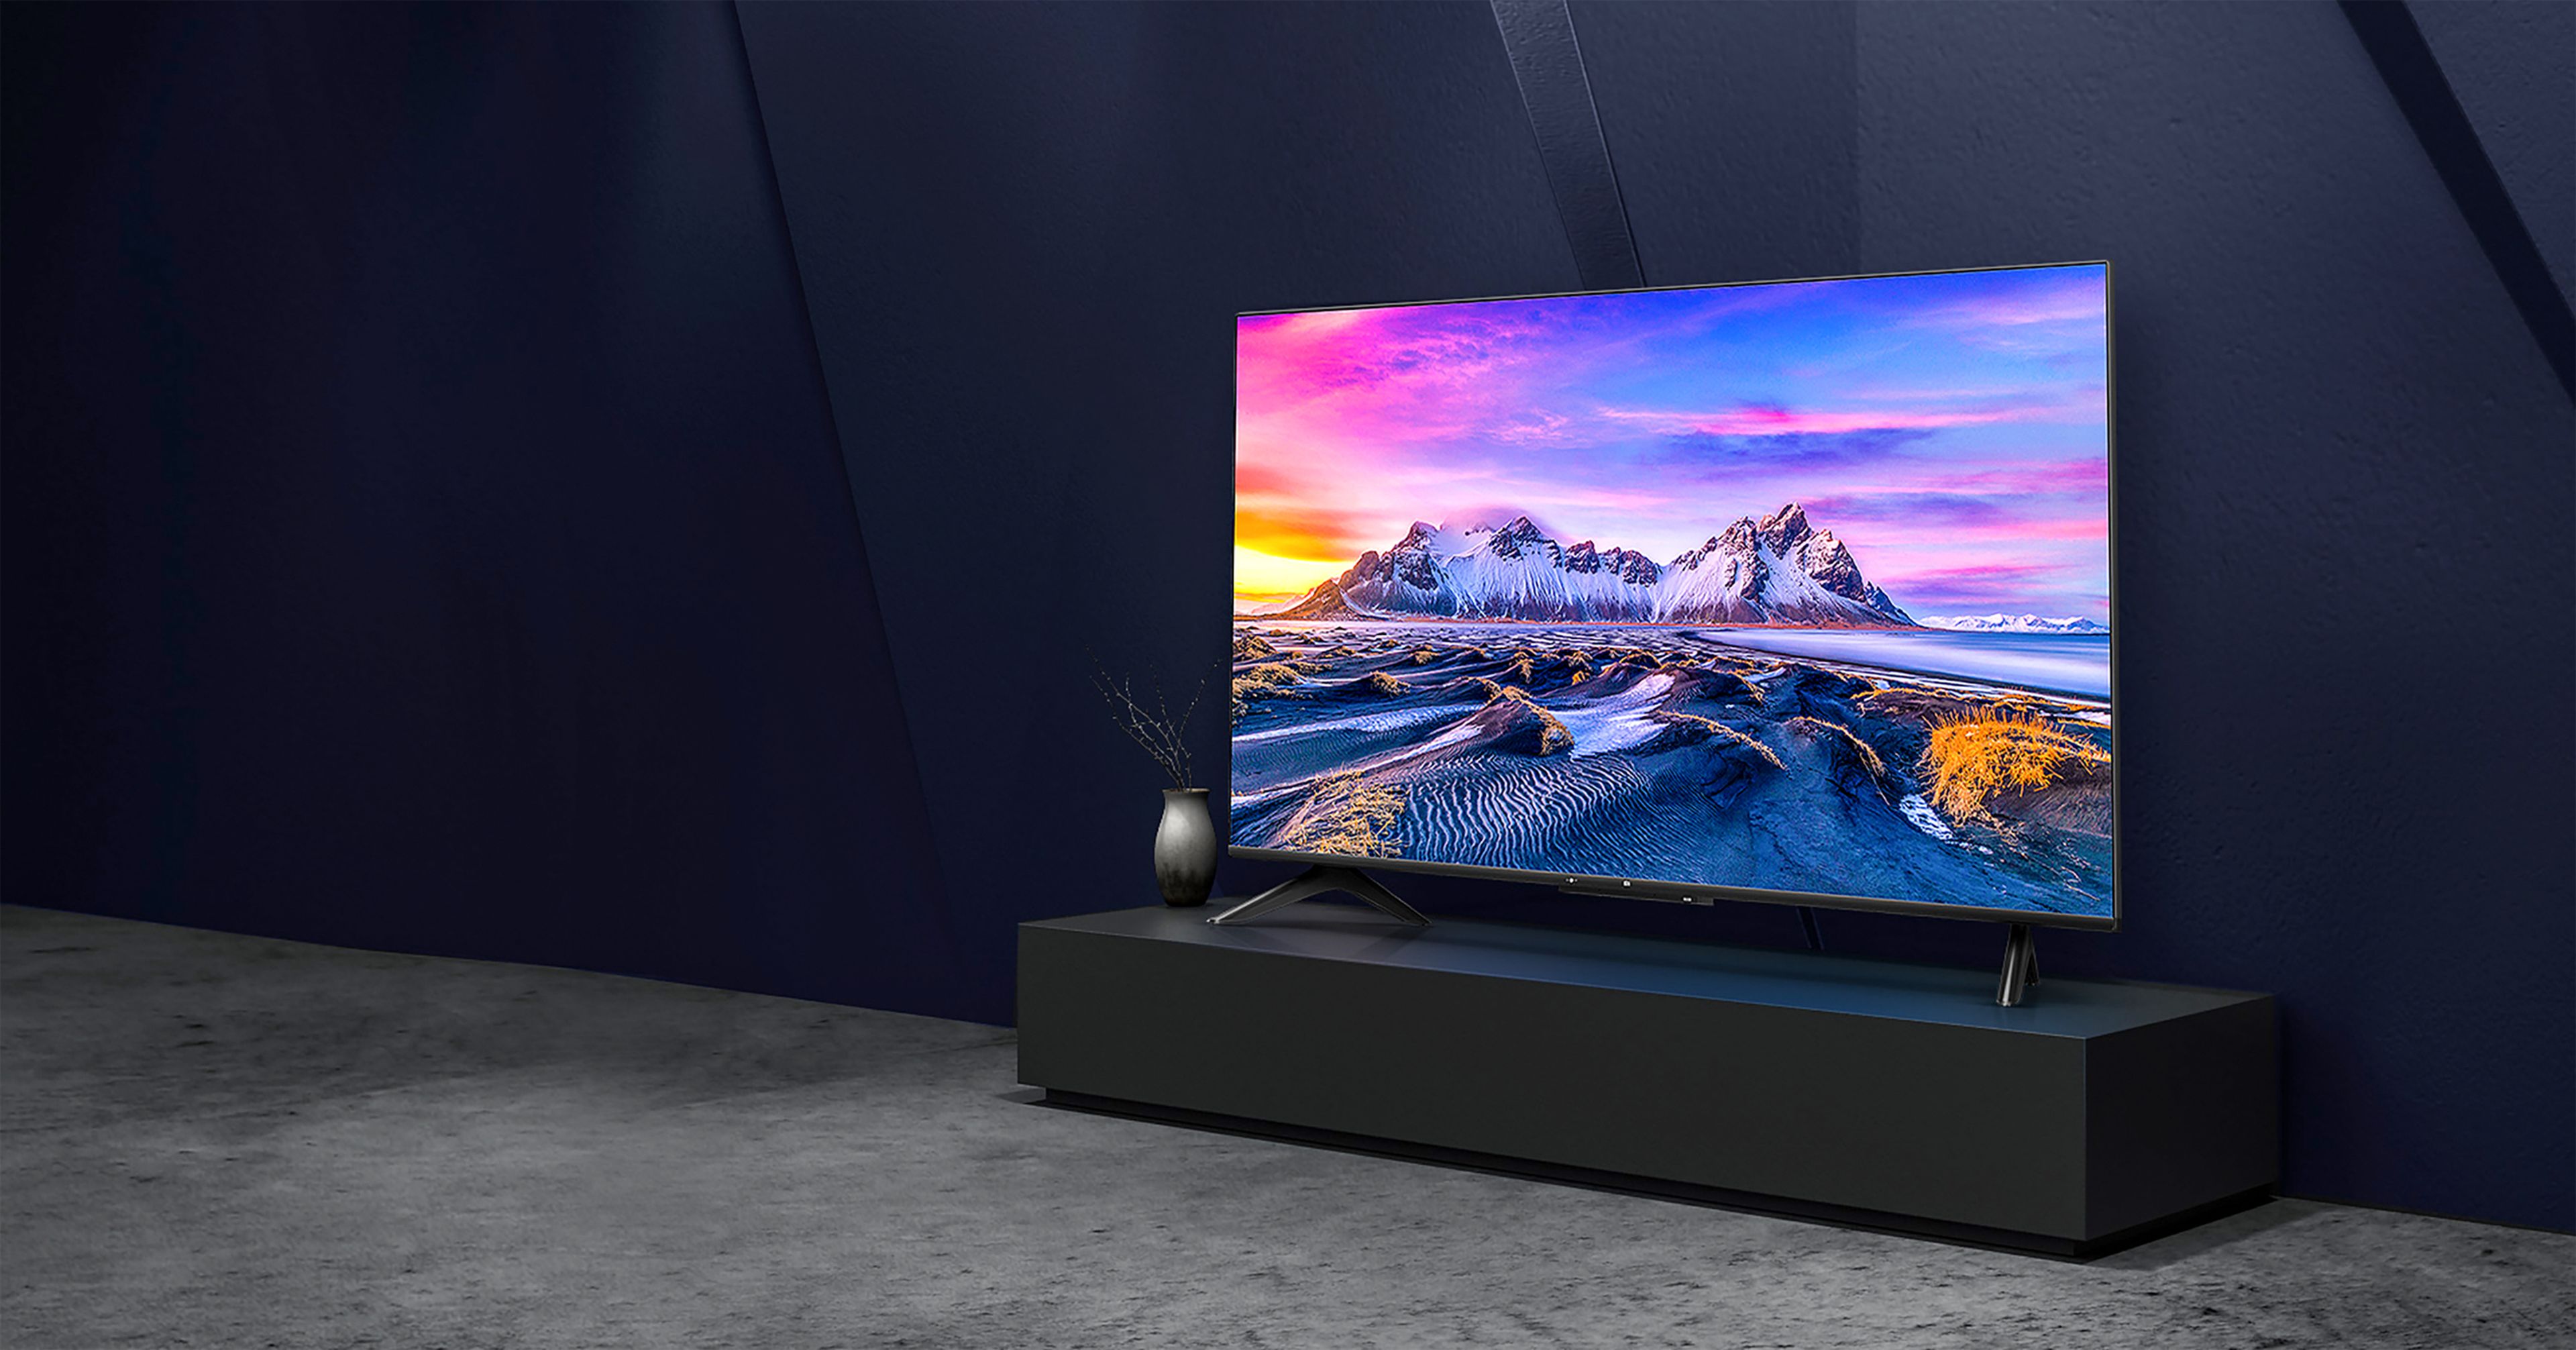 Smart TV de Xiaomi con 43 pulgadas y Android TV más barata en